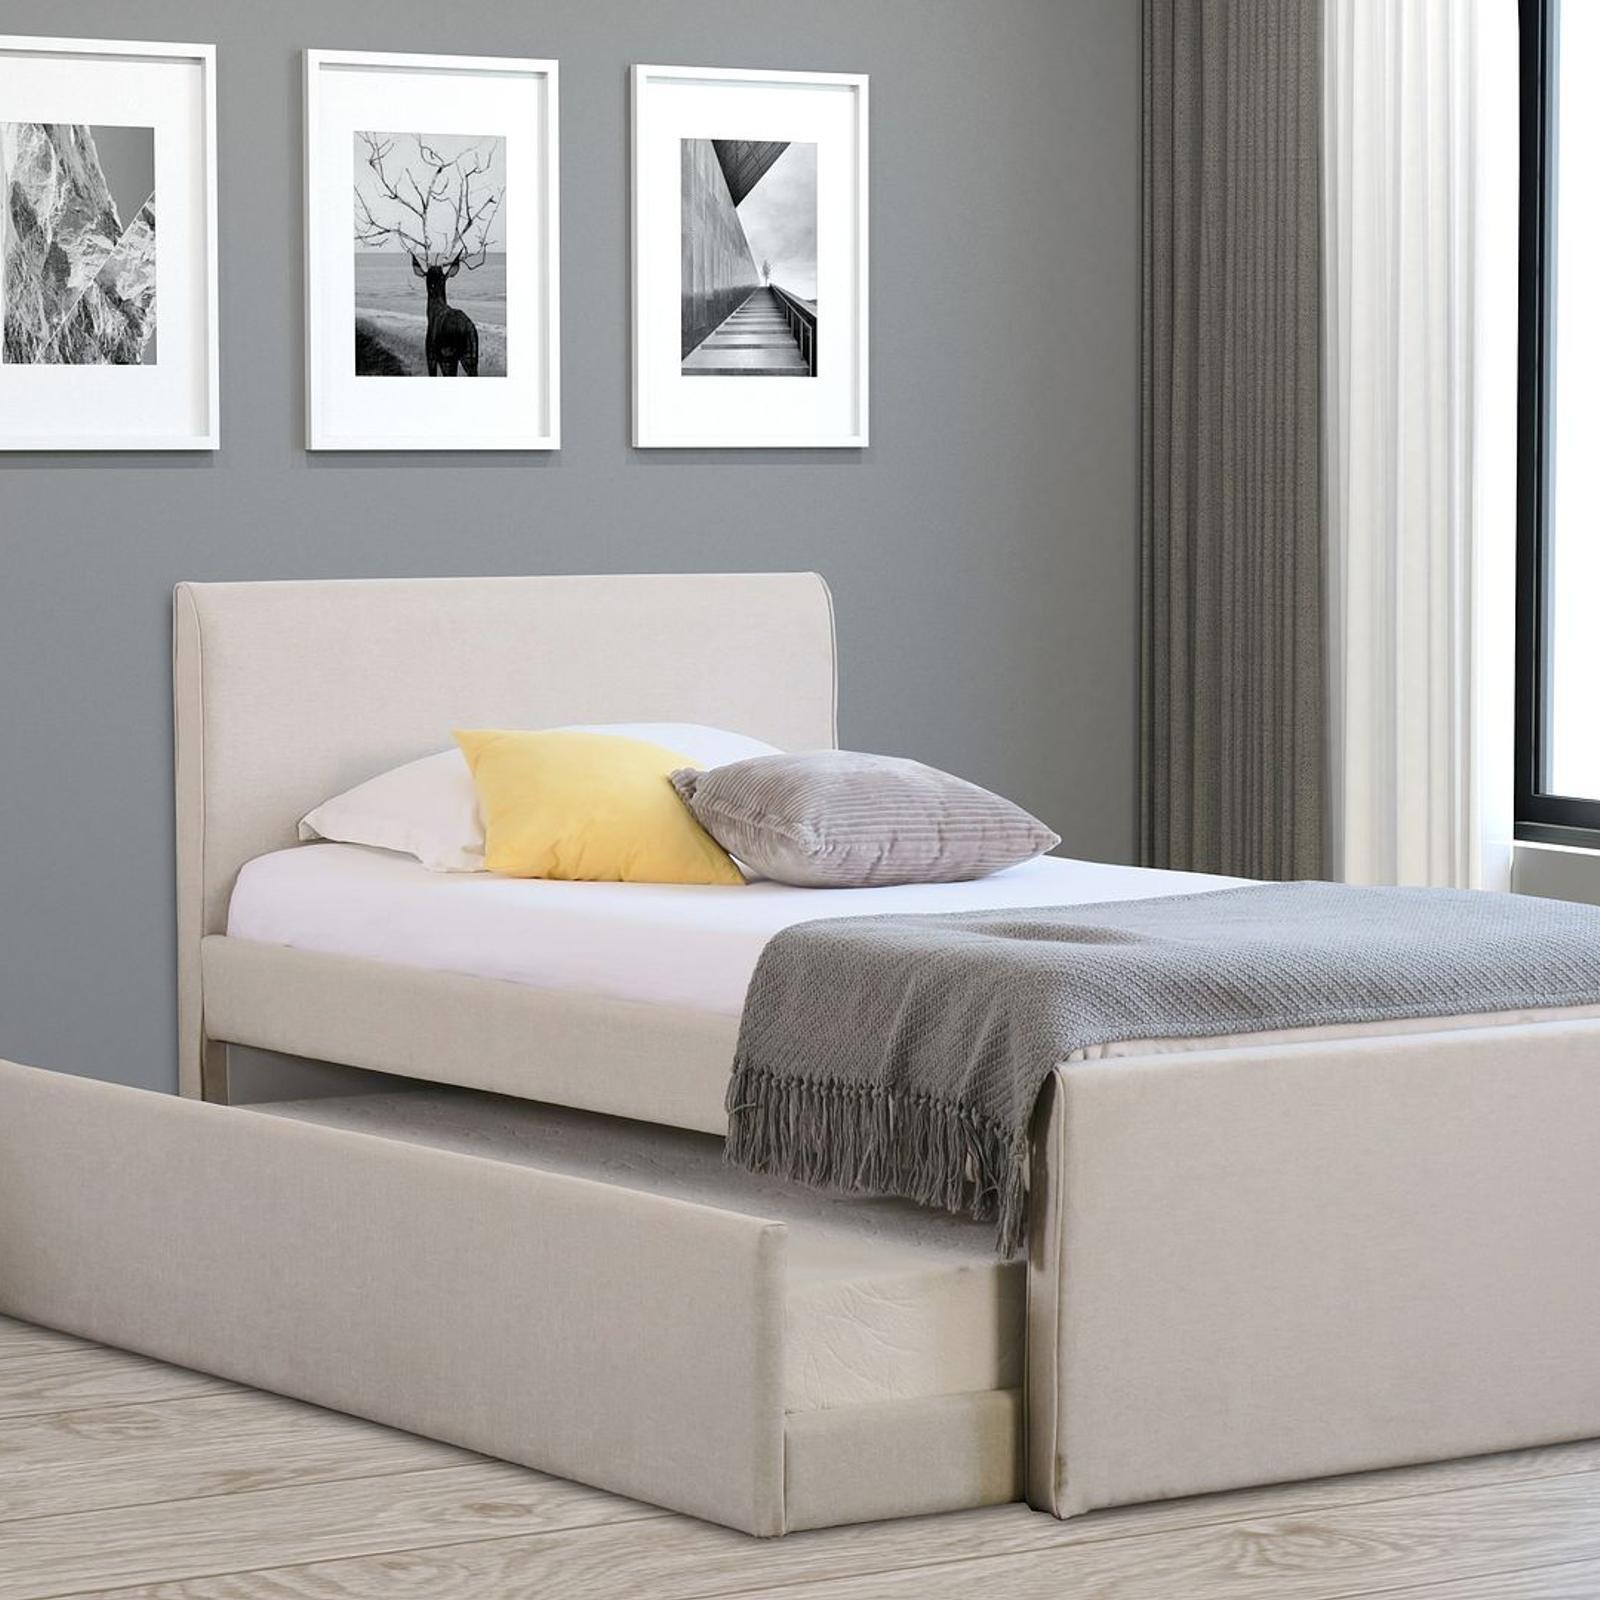 Istyle Selina King Single Trundle Storage Bed Frame Fabric White Oak ...